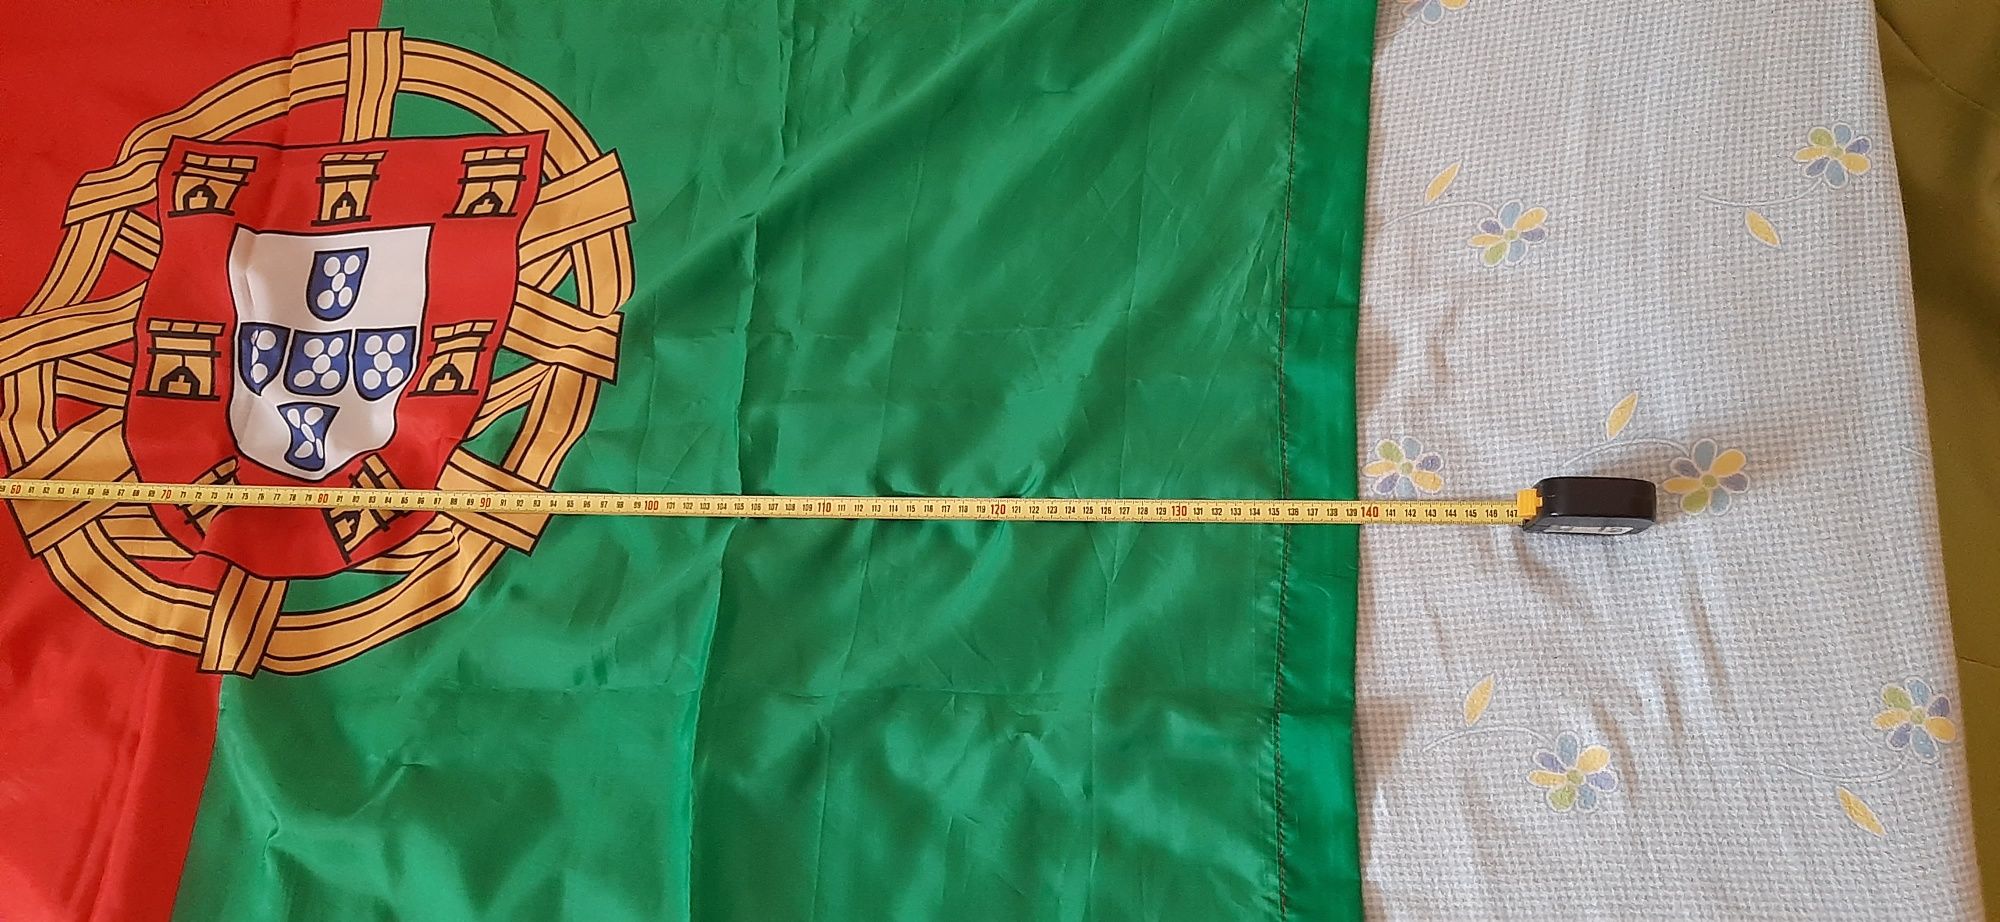 Bandeira Portugal nova 1,40cm×0,90cm(oferta de outra bandeira)